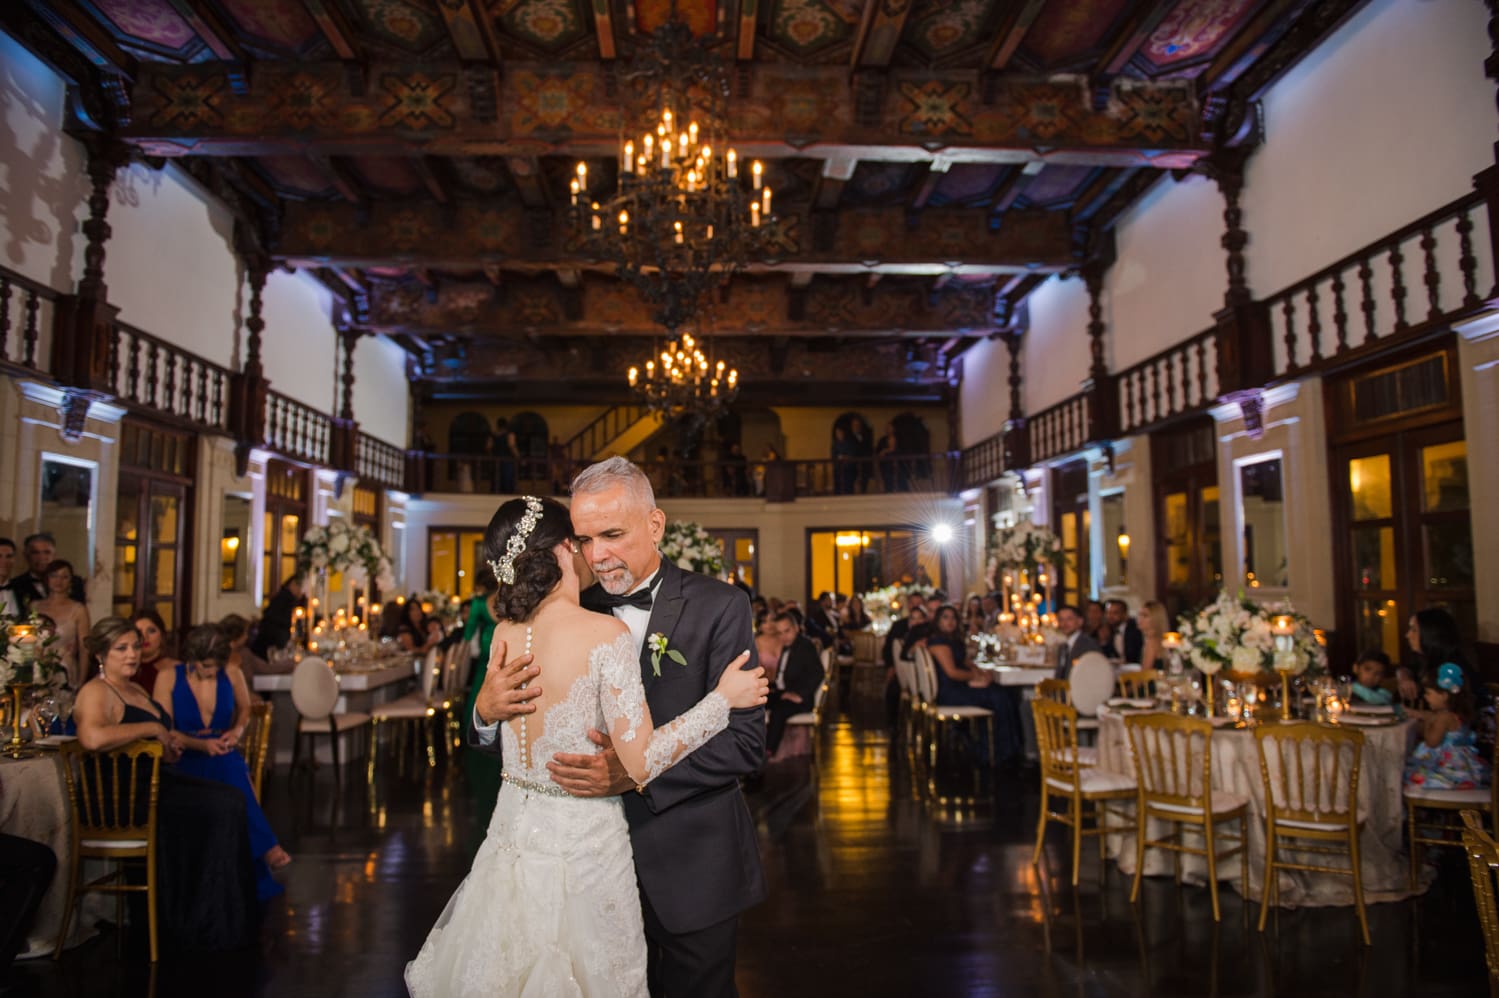 recepcion de bodas en Casa de España por Camille Fontanez fotografo de bodas en Puerto Rico